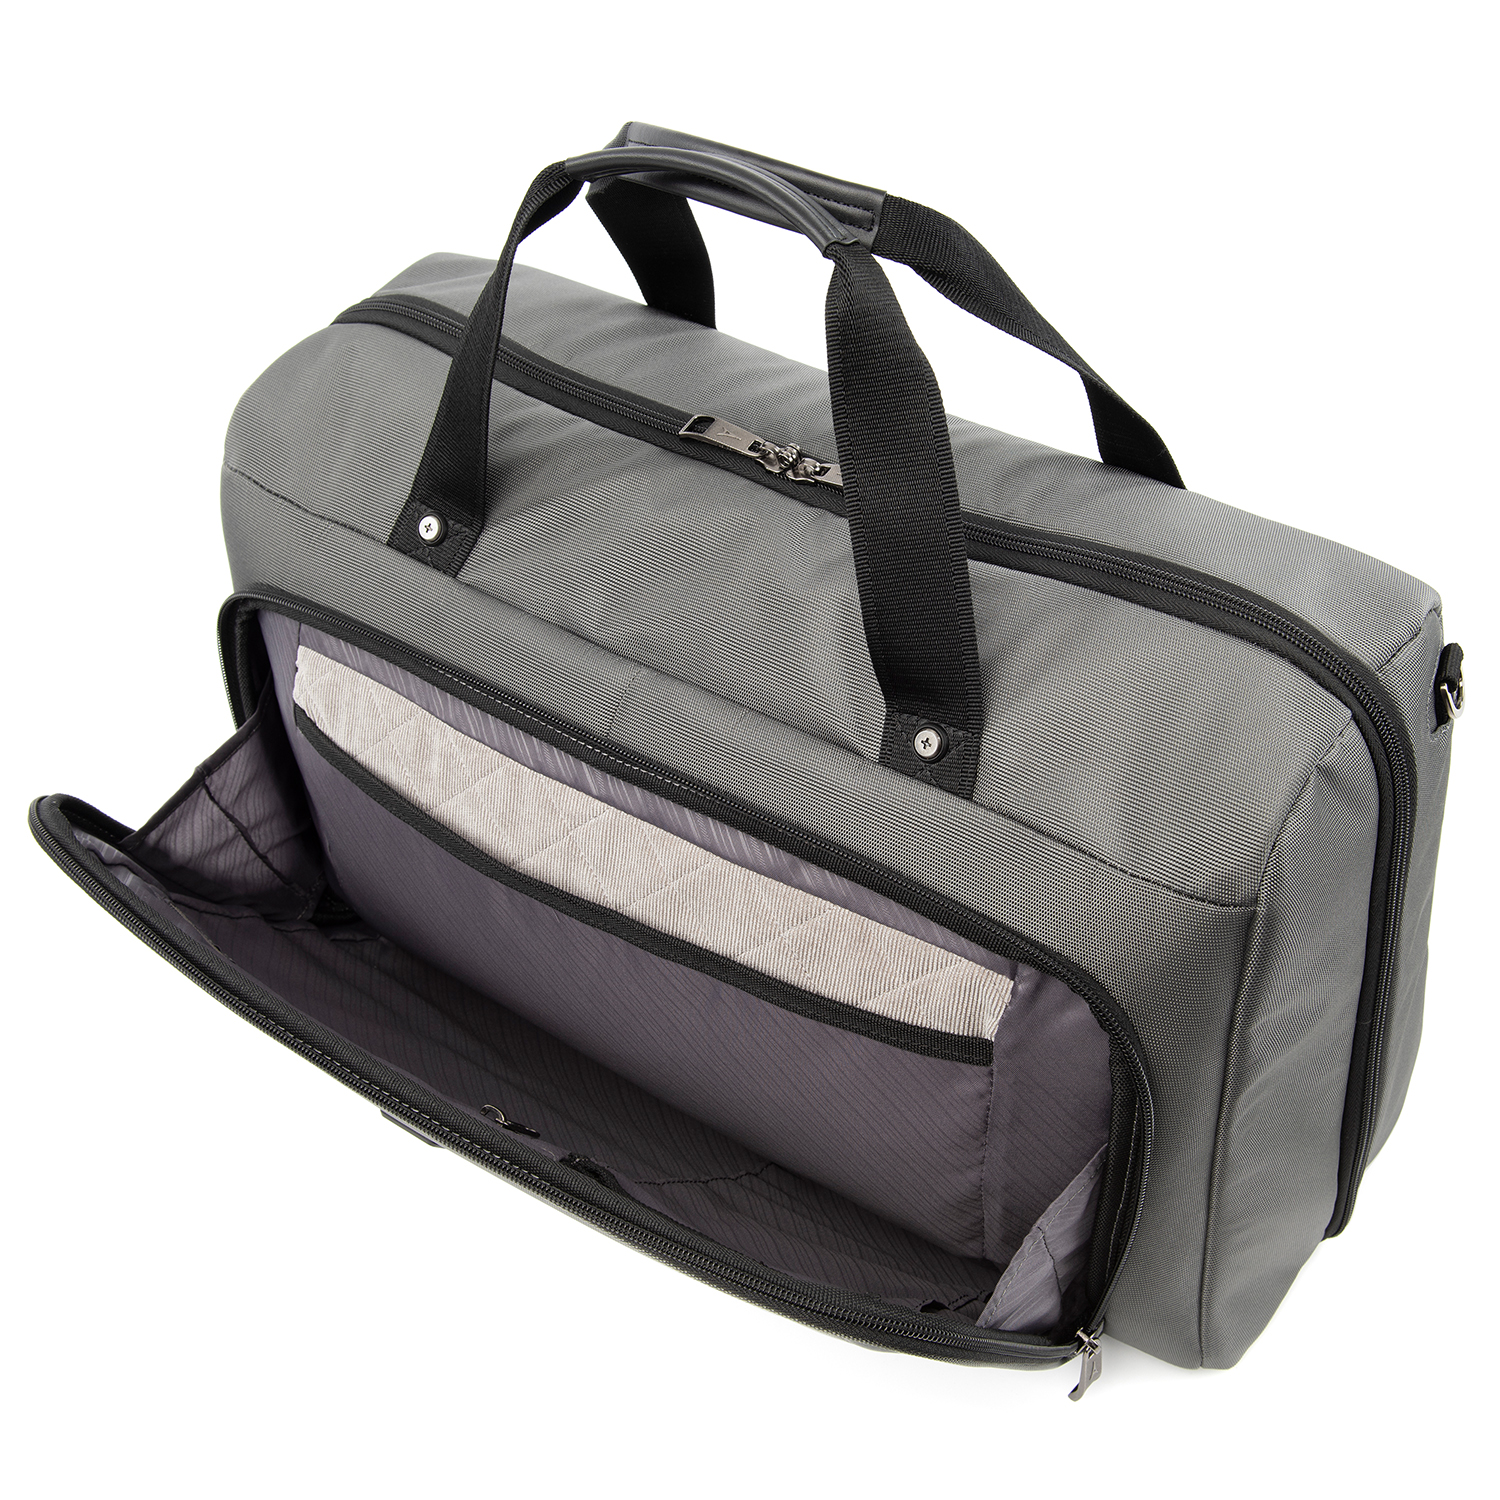 Travelpro Crew Versapack Weekender Carry-on Duffel Bag w/ Suiter | eBay